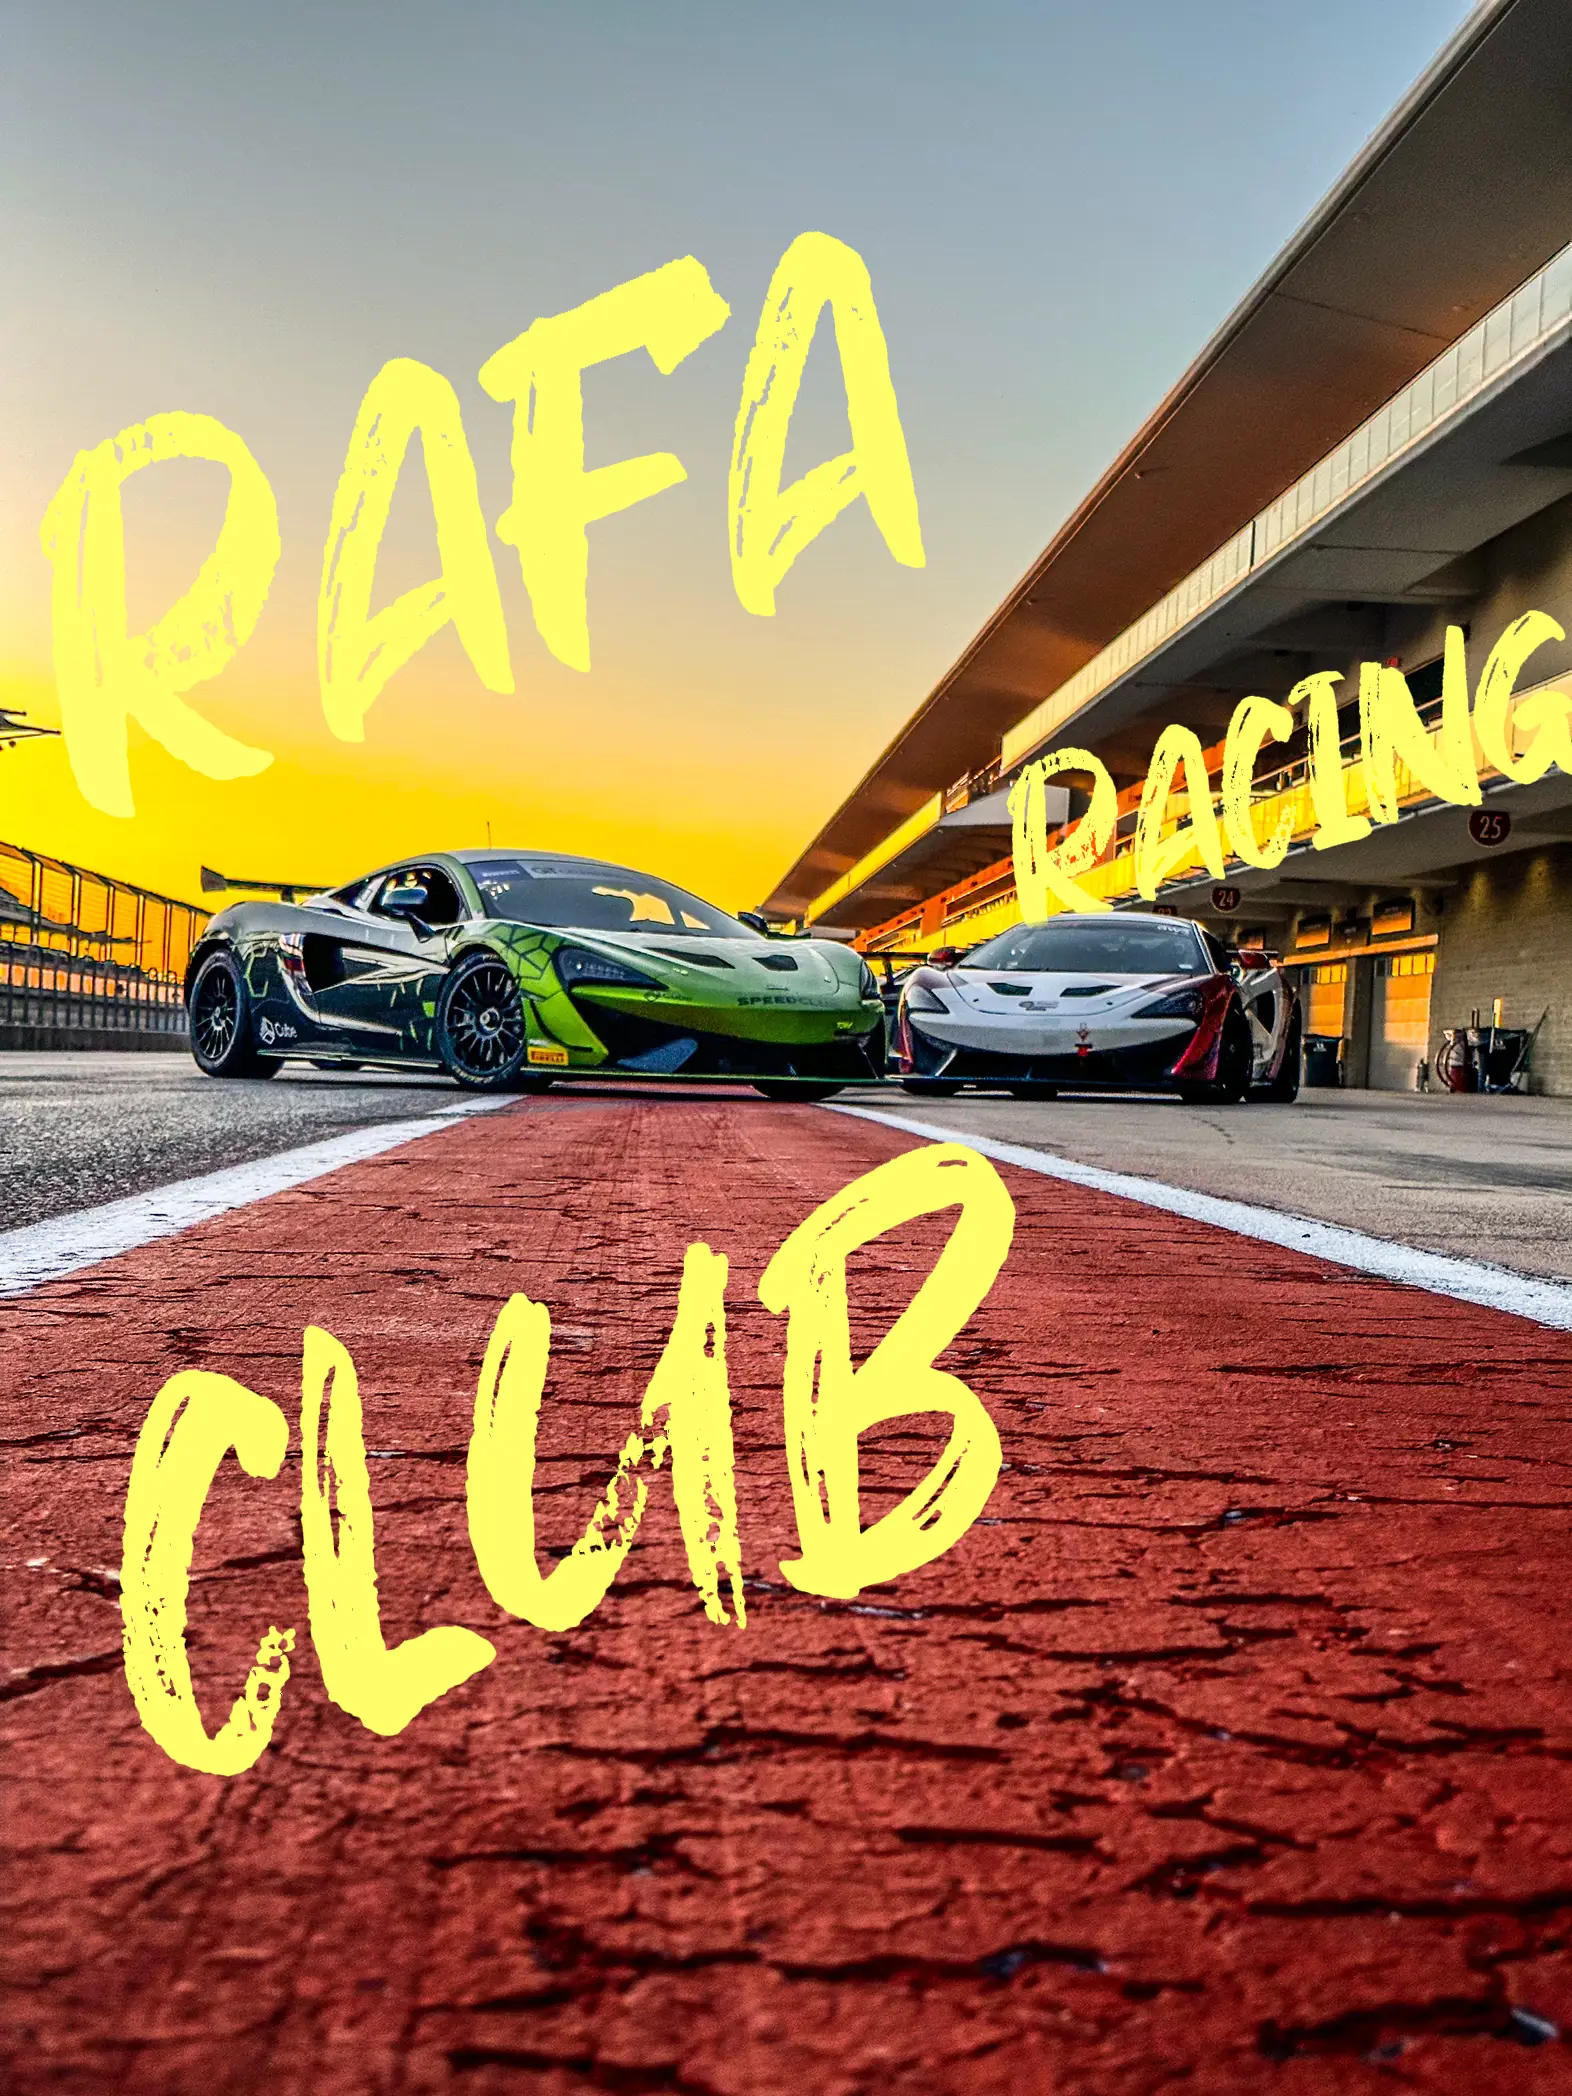 About - RAFA Racing Club